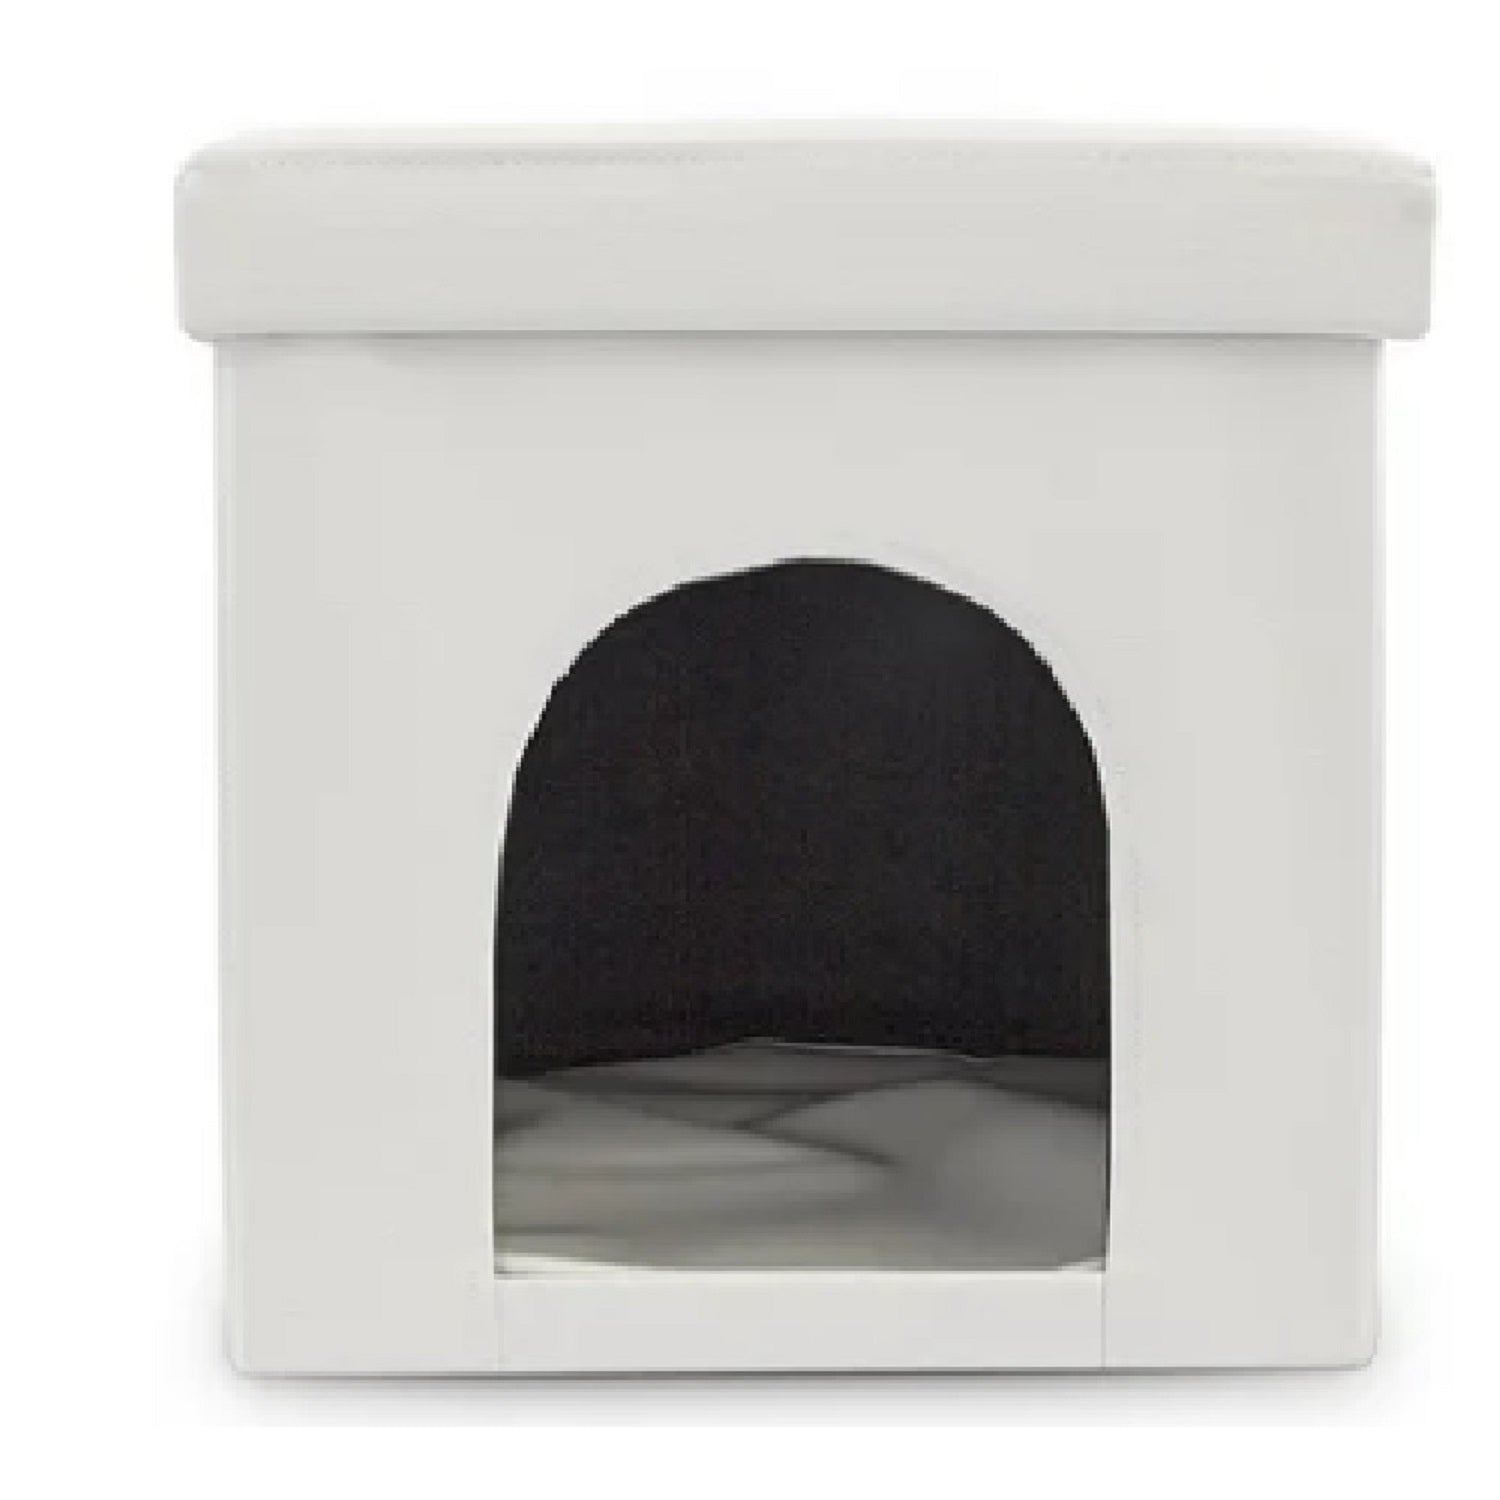 Casa cubo puff tipo baul para mascotas pequeñas en cuero sintetico color blanco